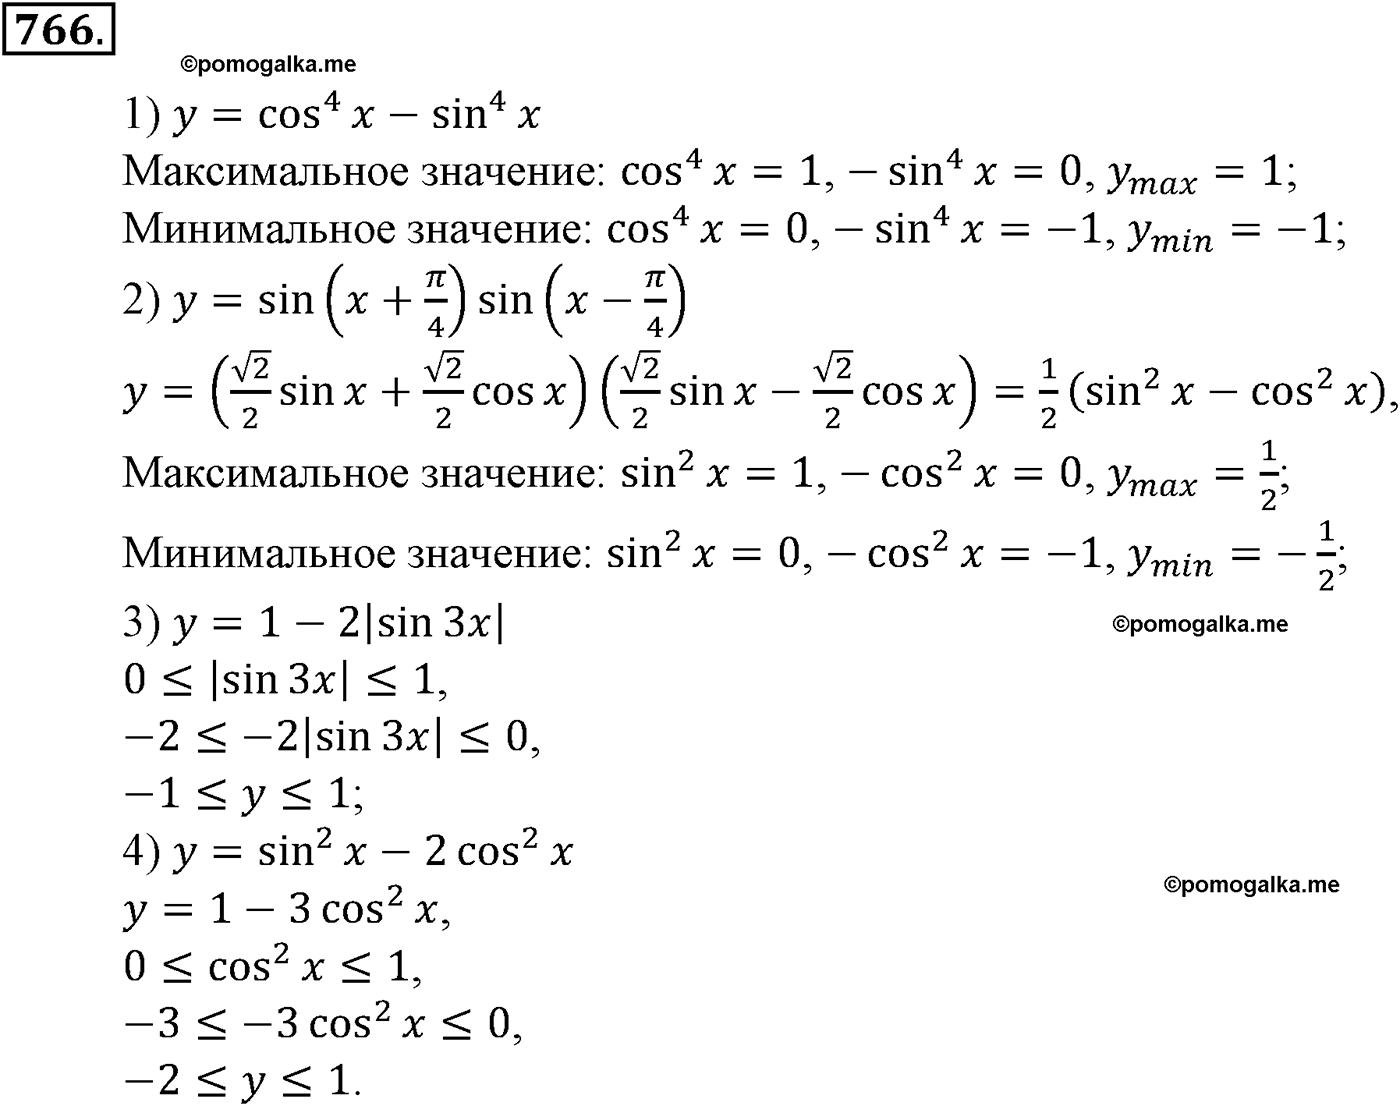 разбор задачи №766 по алгебре за 10-11 класс из учебника Алимова, Колягина